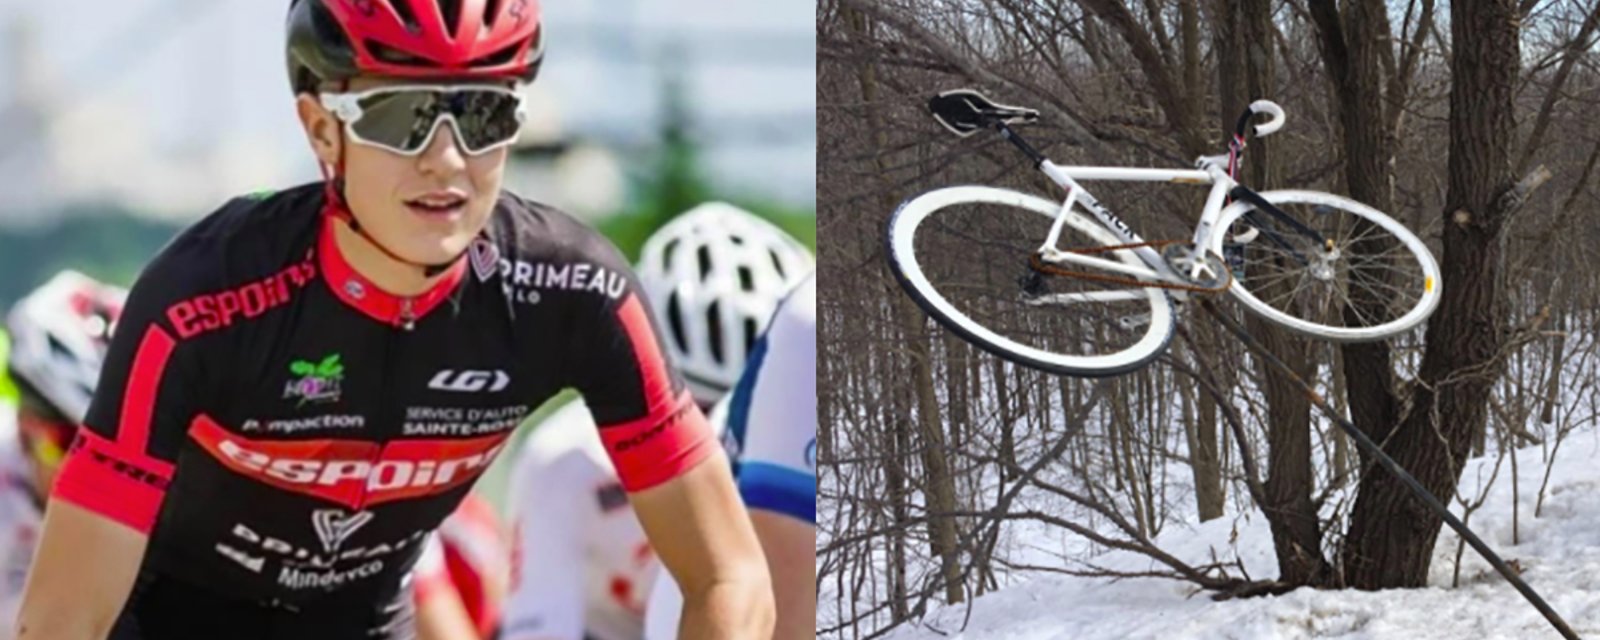 Le vélo fantôme à la mémoire du cycliste de 18 décédé a été vandalisé